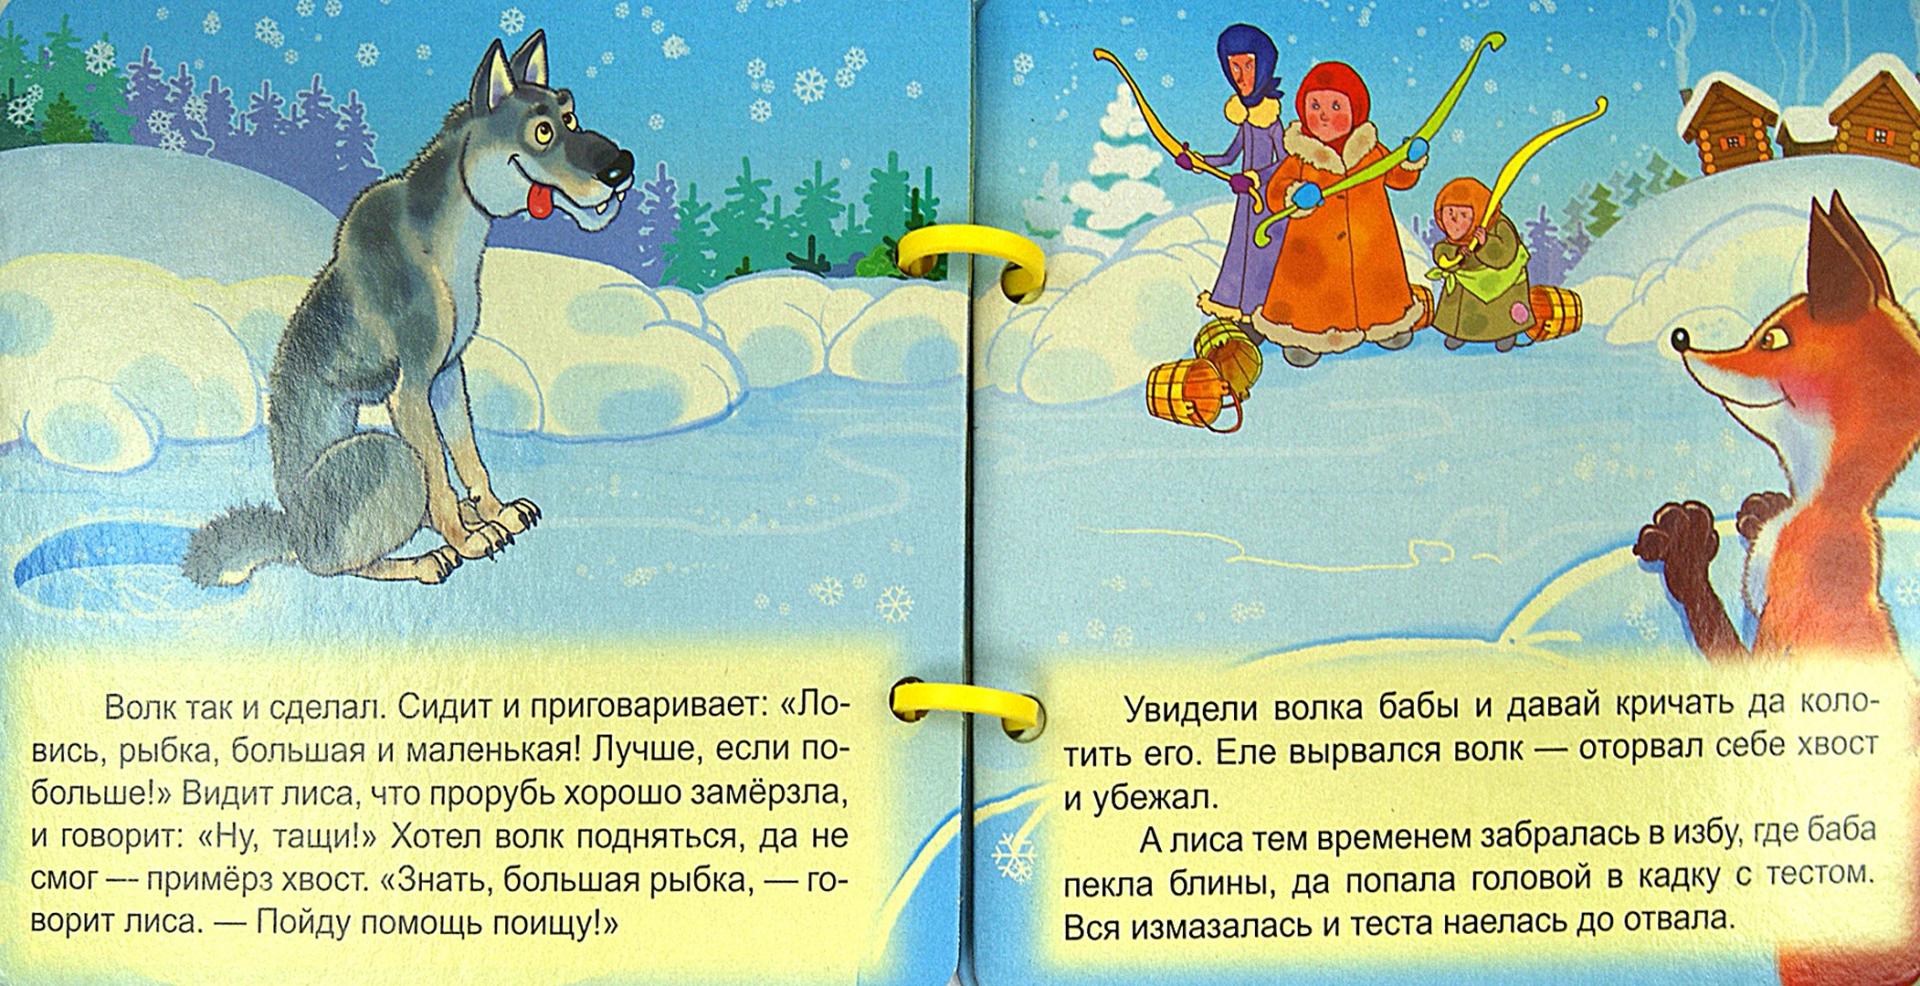 Иллюстрация 1 из 4 для Волк и лиса | Лабиринт - книги. Источник: Лабиринт